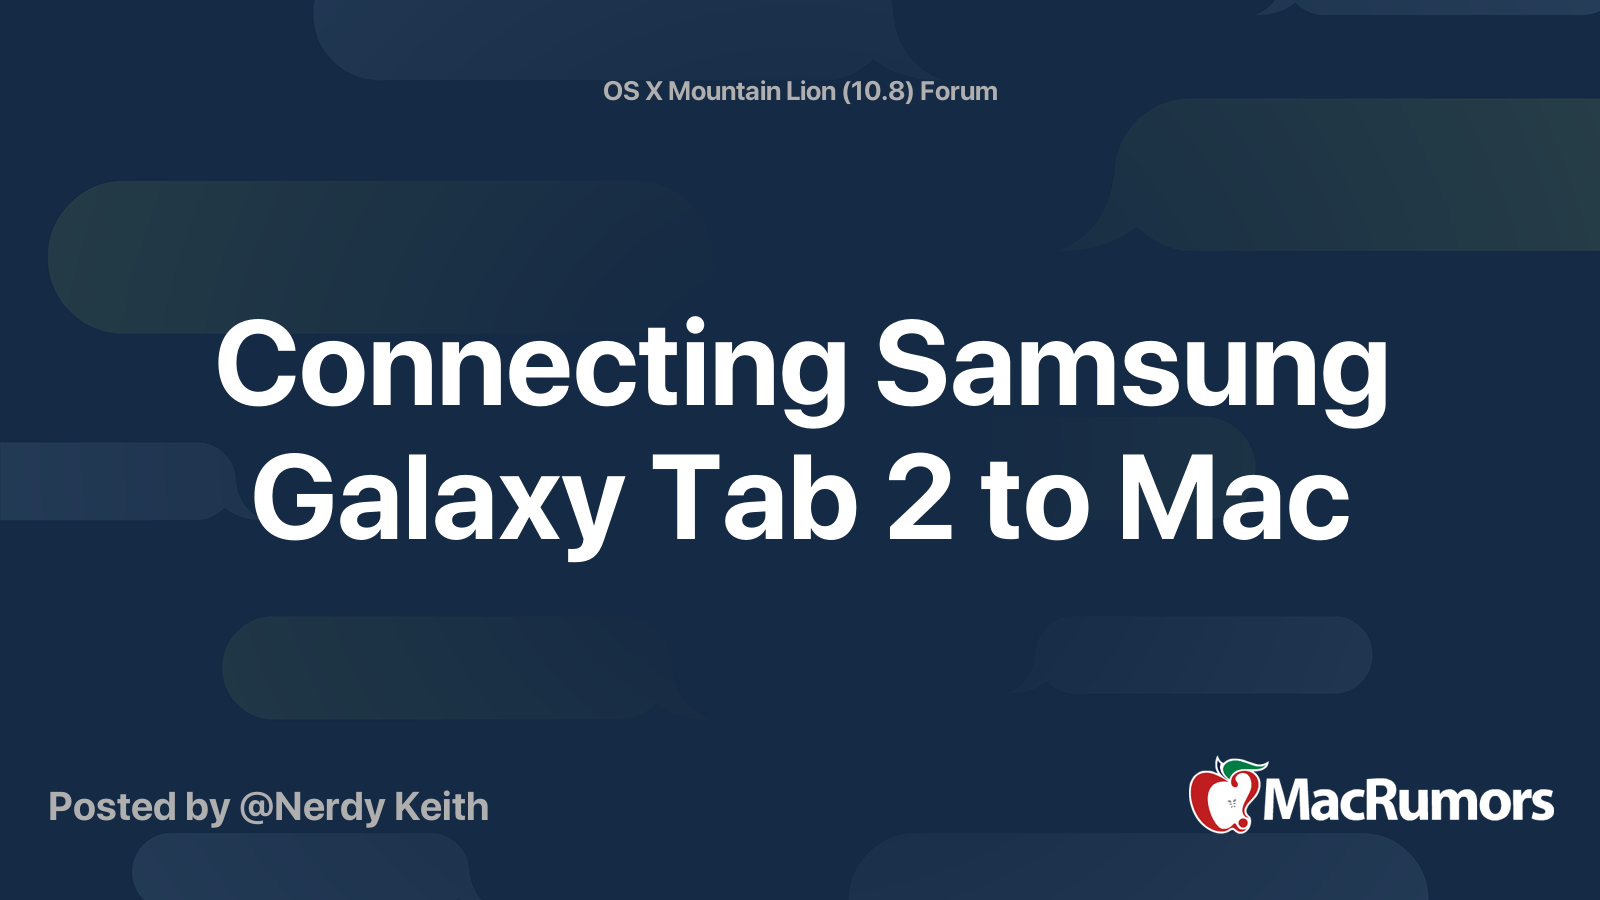 Samsung Galaxy For Mac Os X